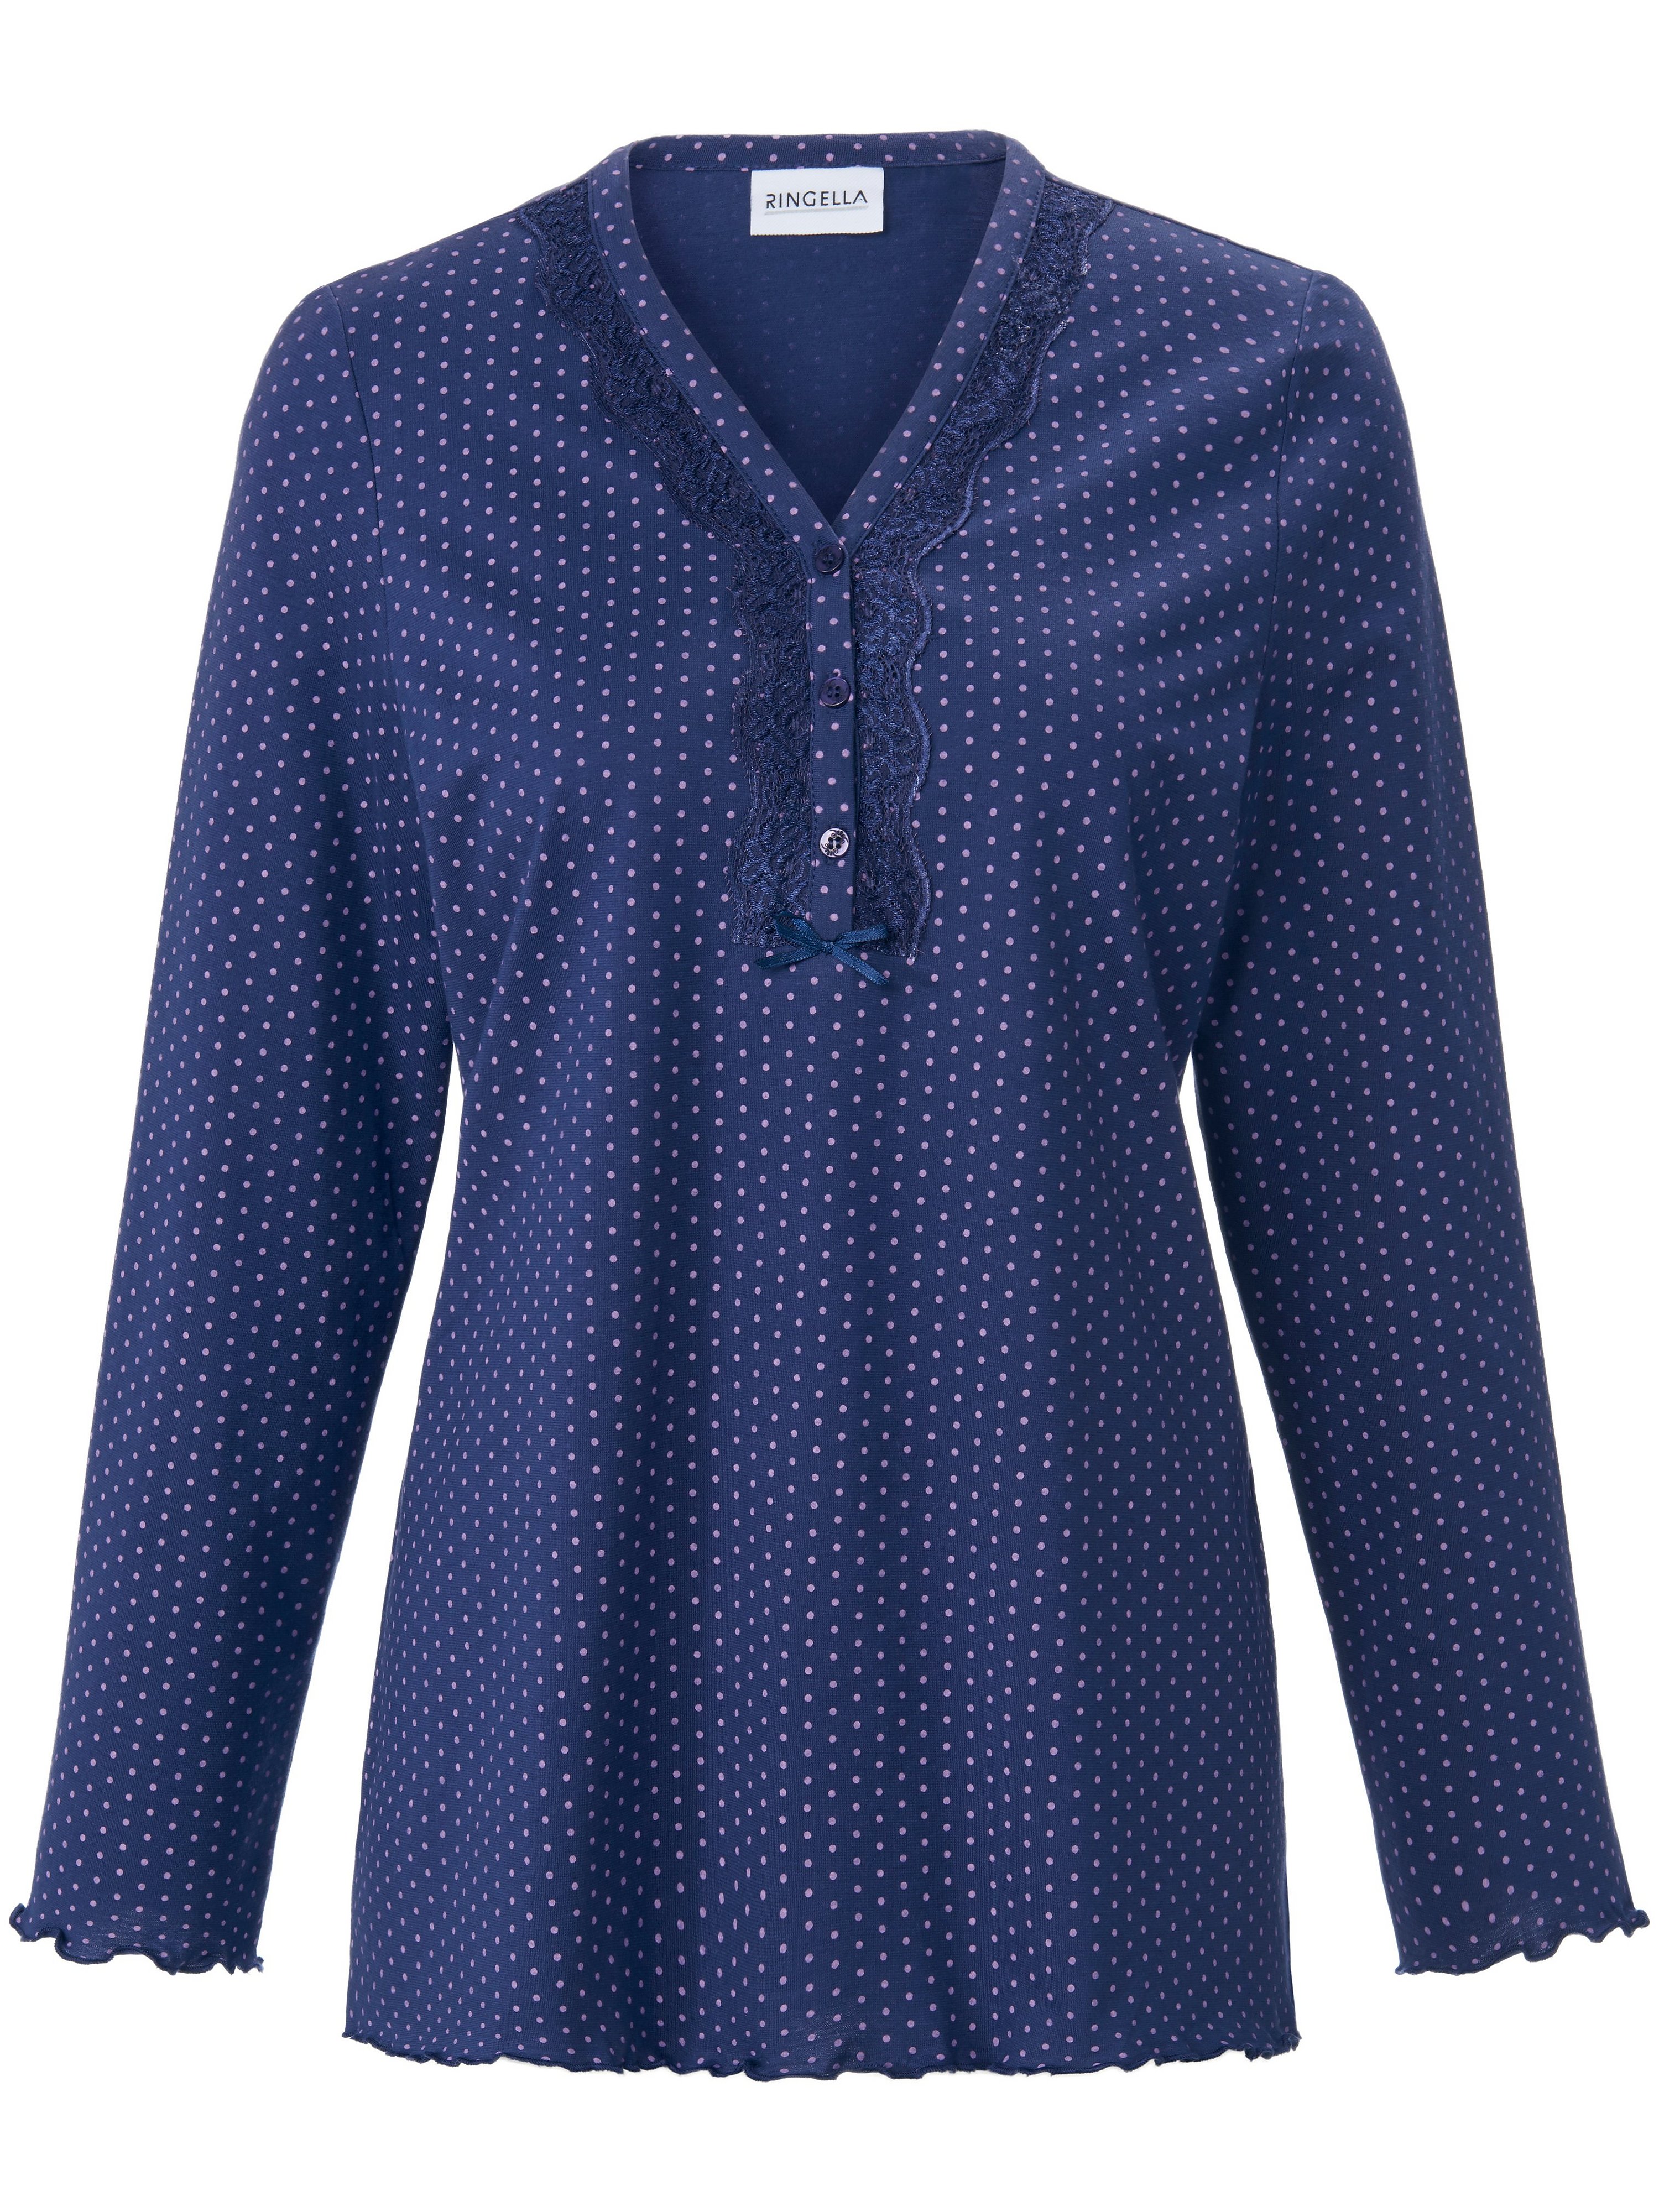 Pyjama 100% katoen Van Ringella blauw